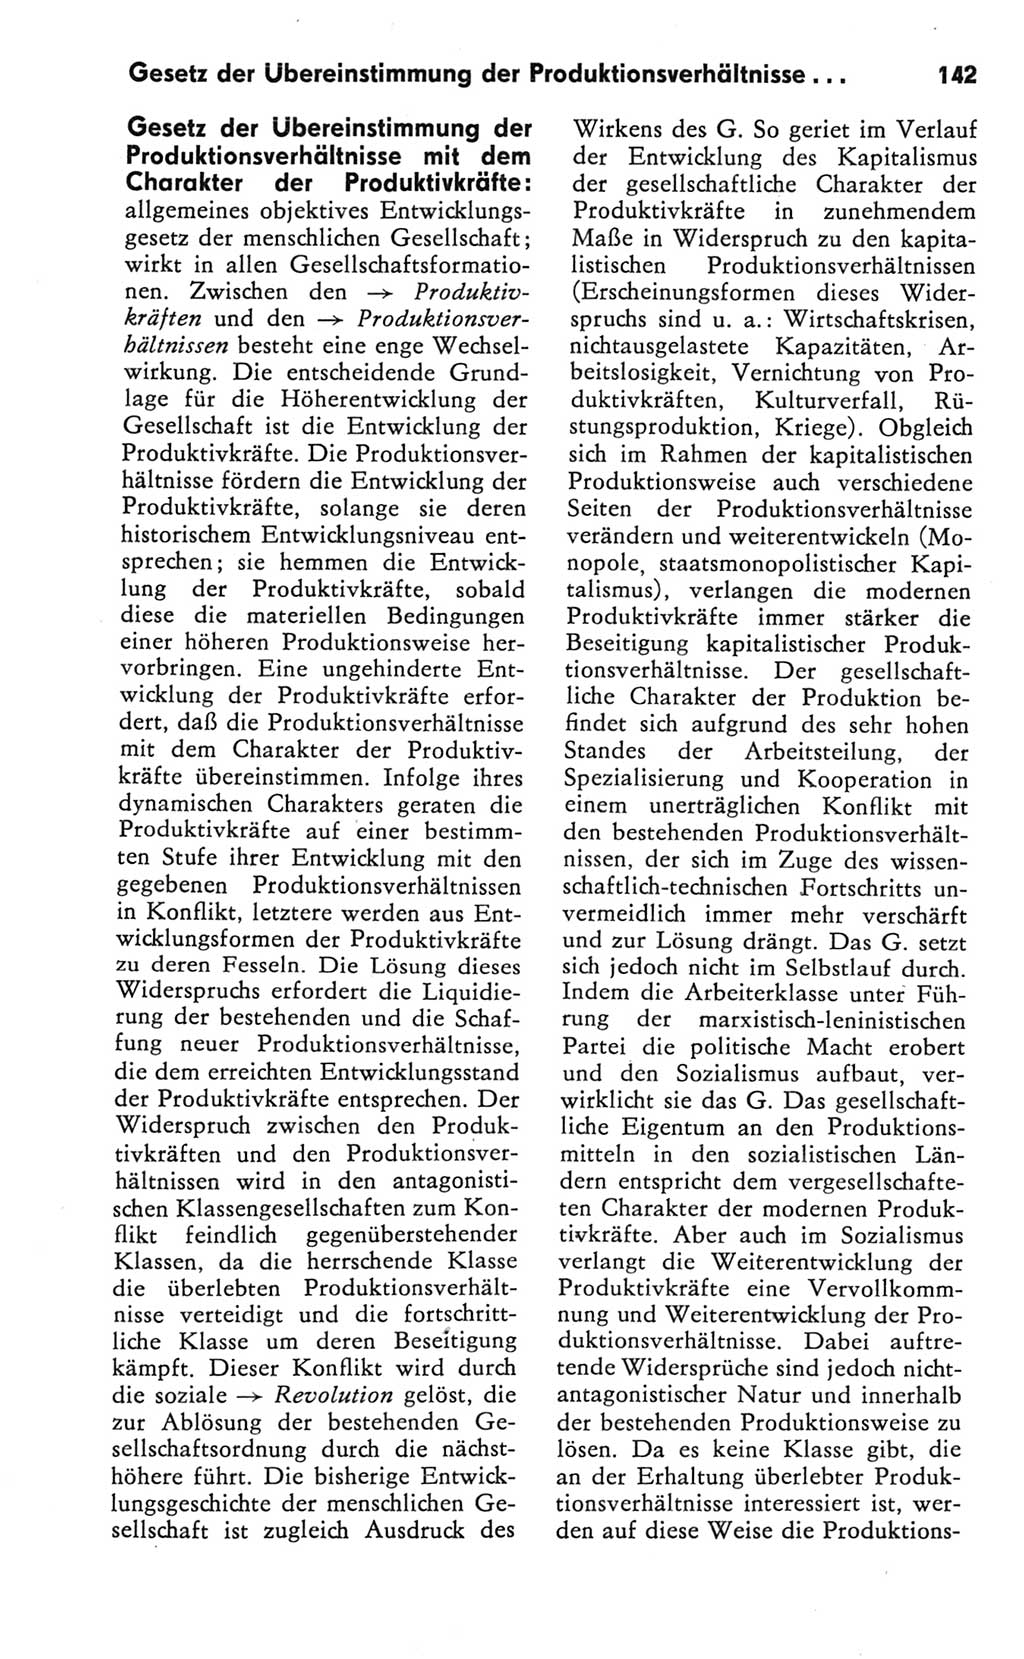 Kleines Wörterbuch der marxistisch-leninistischen Philosophie [Deutsche Demokratische Republik (DDR)] 1981, Seite 142 (Kl. Wb. ML Phil. DDR 1981, S. 142)